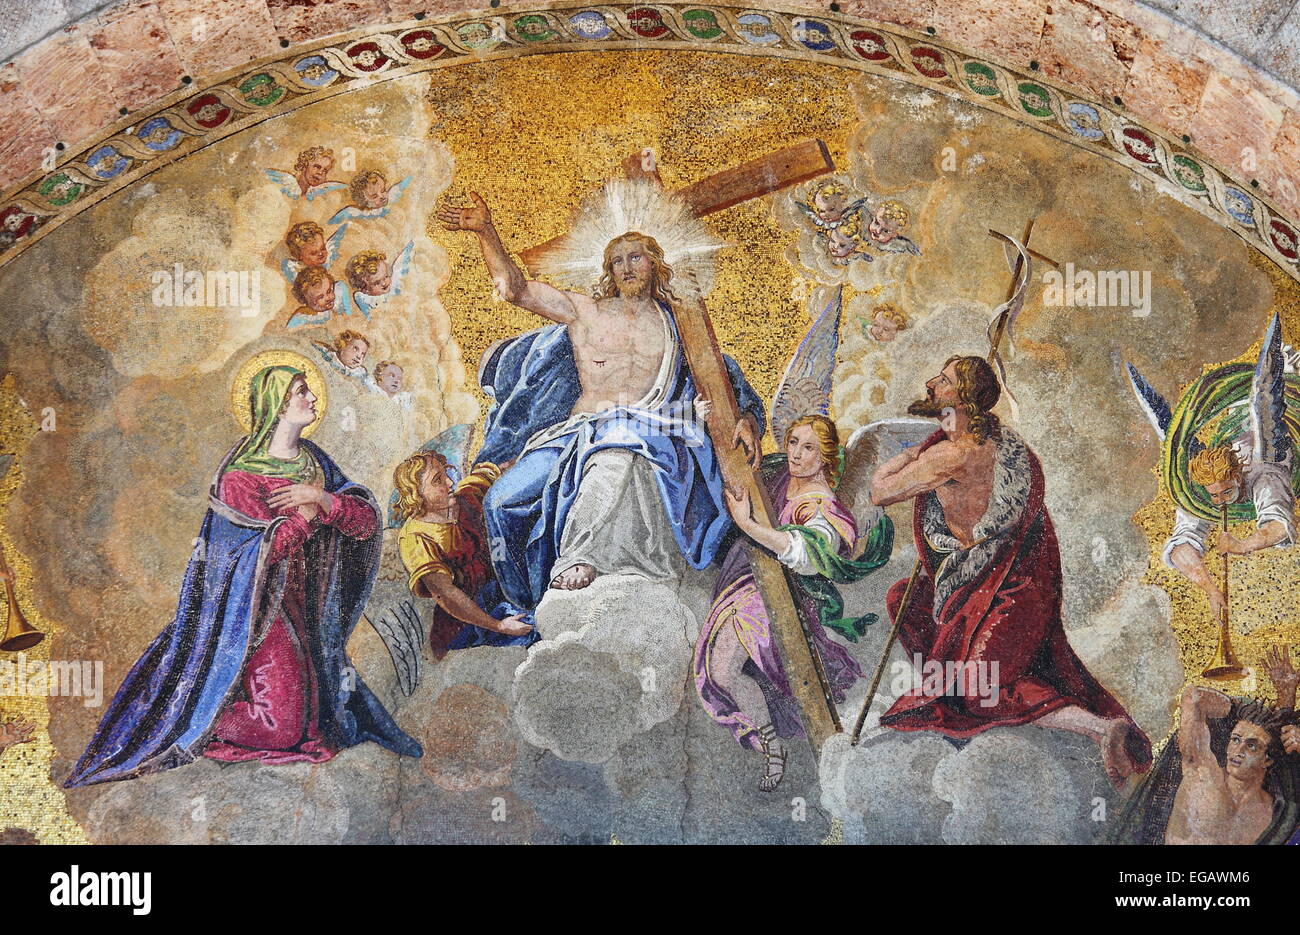 Mosaïque de la Basilique Saint Marc, représentant l'Ascension de Jésus Christ. Venise, Italie Banque D'Images